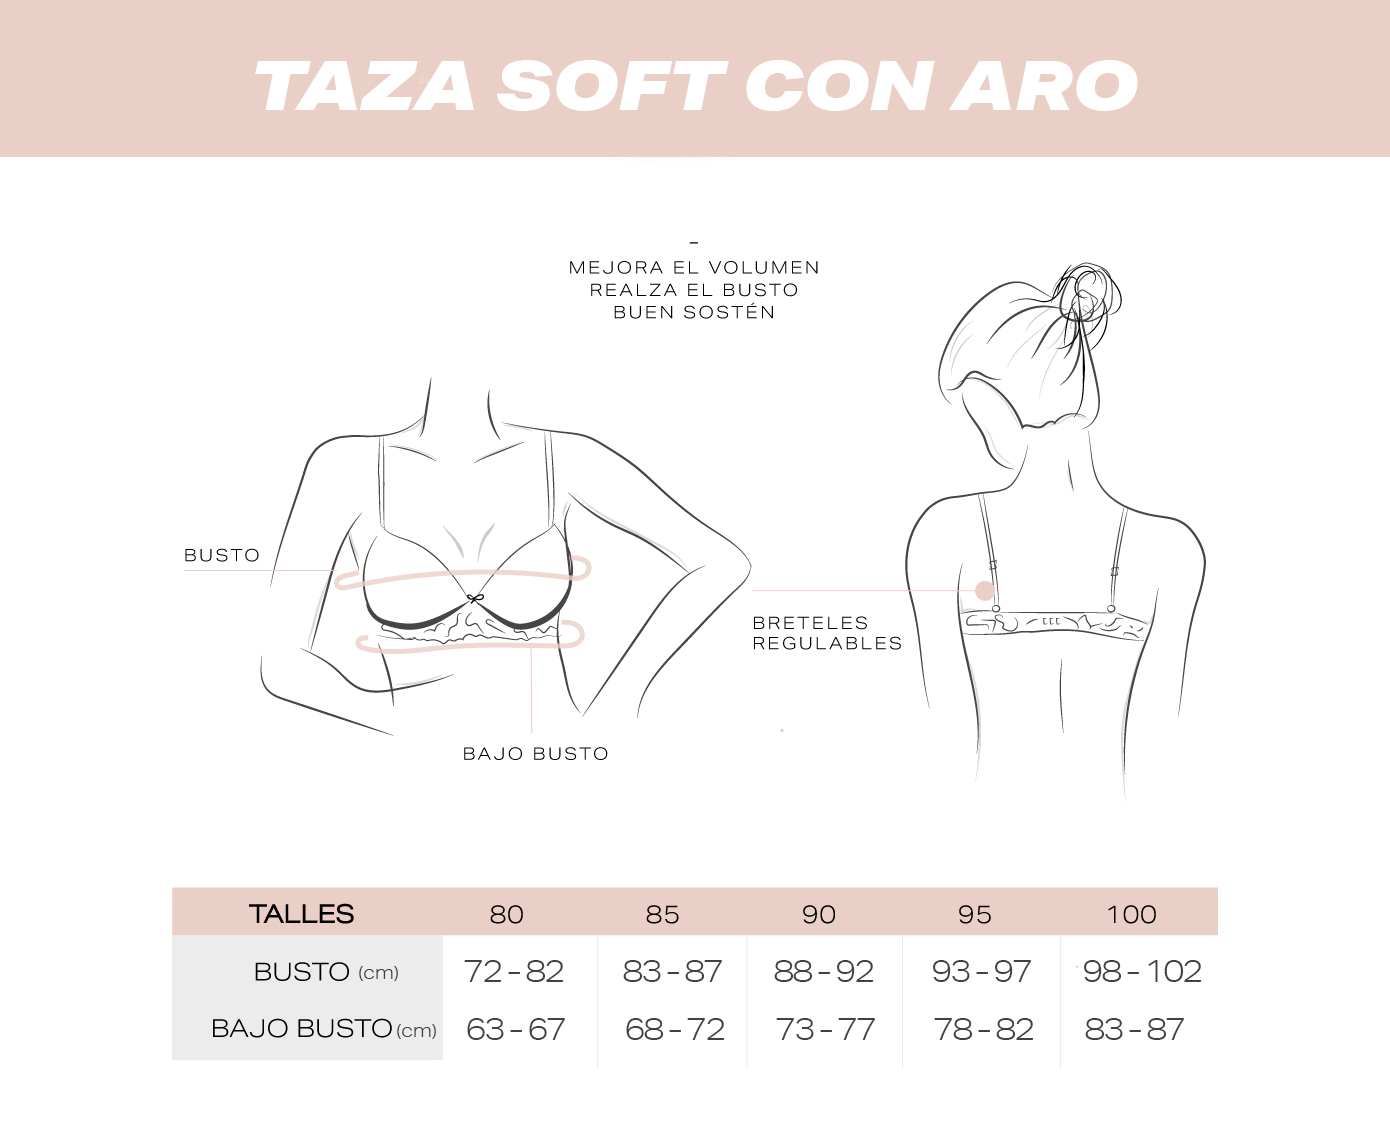 Guía de talles Corpiños Con Aro y Taza Soft